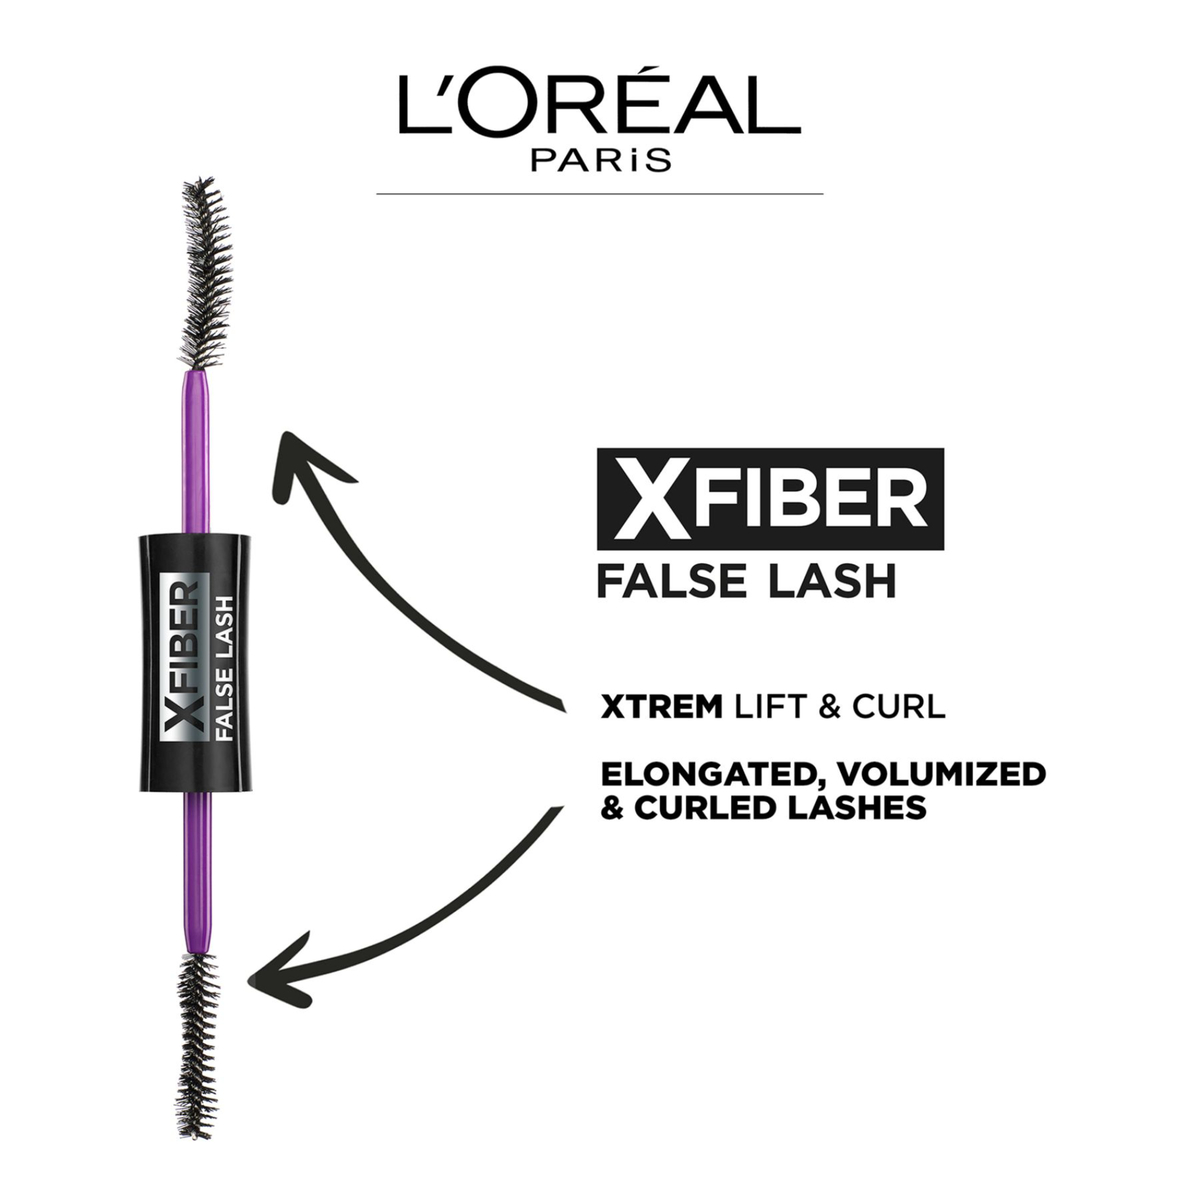 L'Oreal Paris Mascara False Lash X Fiber 01 Black 1pc